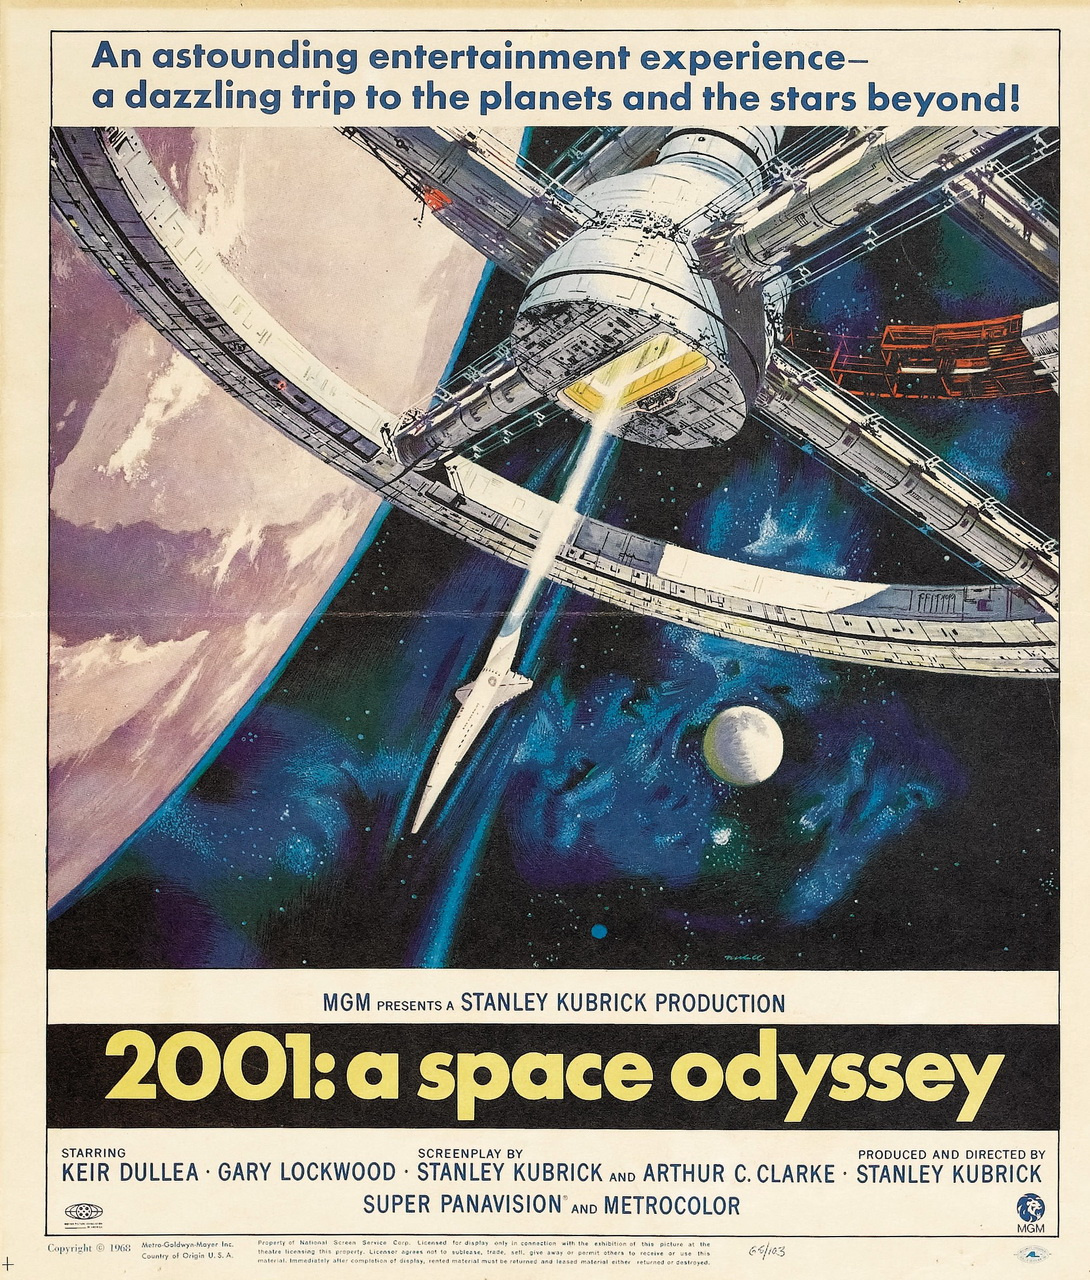 Оригинальный постер к фильму Кубрика со слоганом «Потрясающее развлечение — ослепительное путешествие к планетам и звездам за их пределами!»